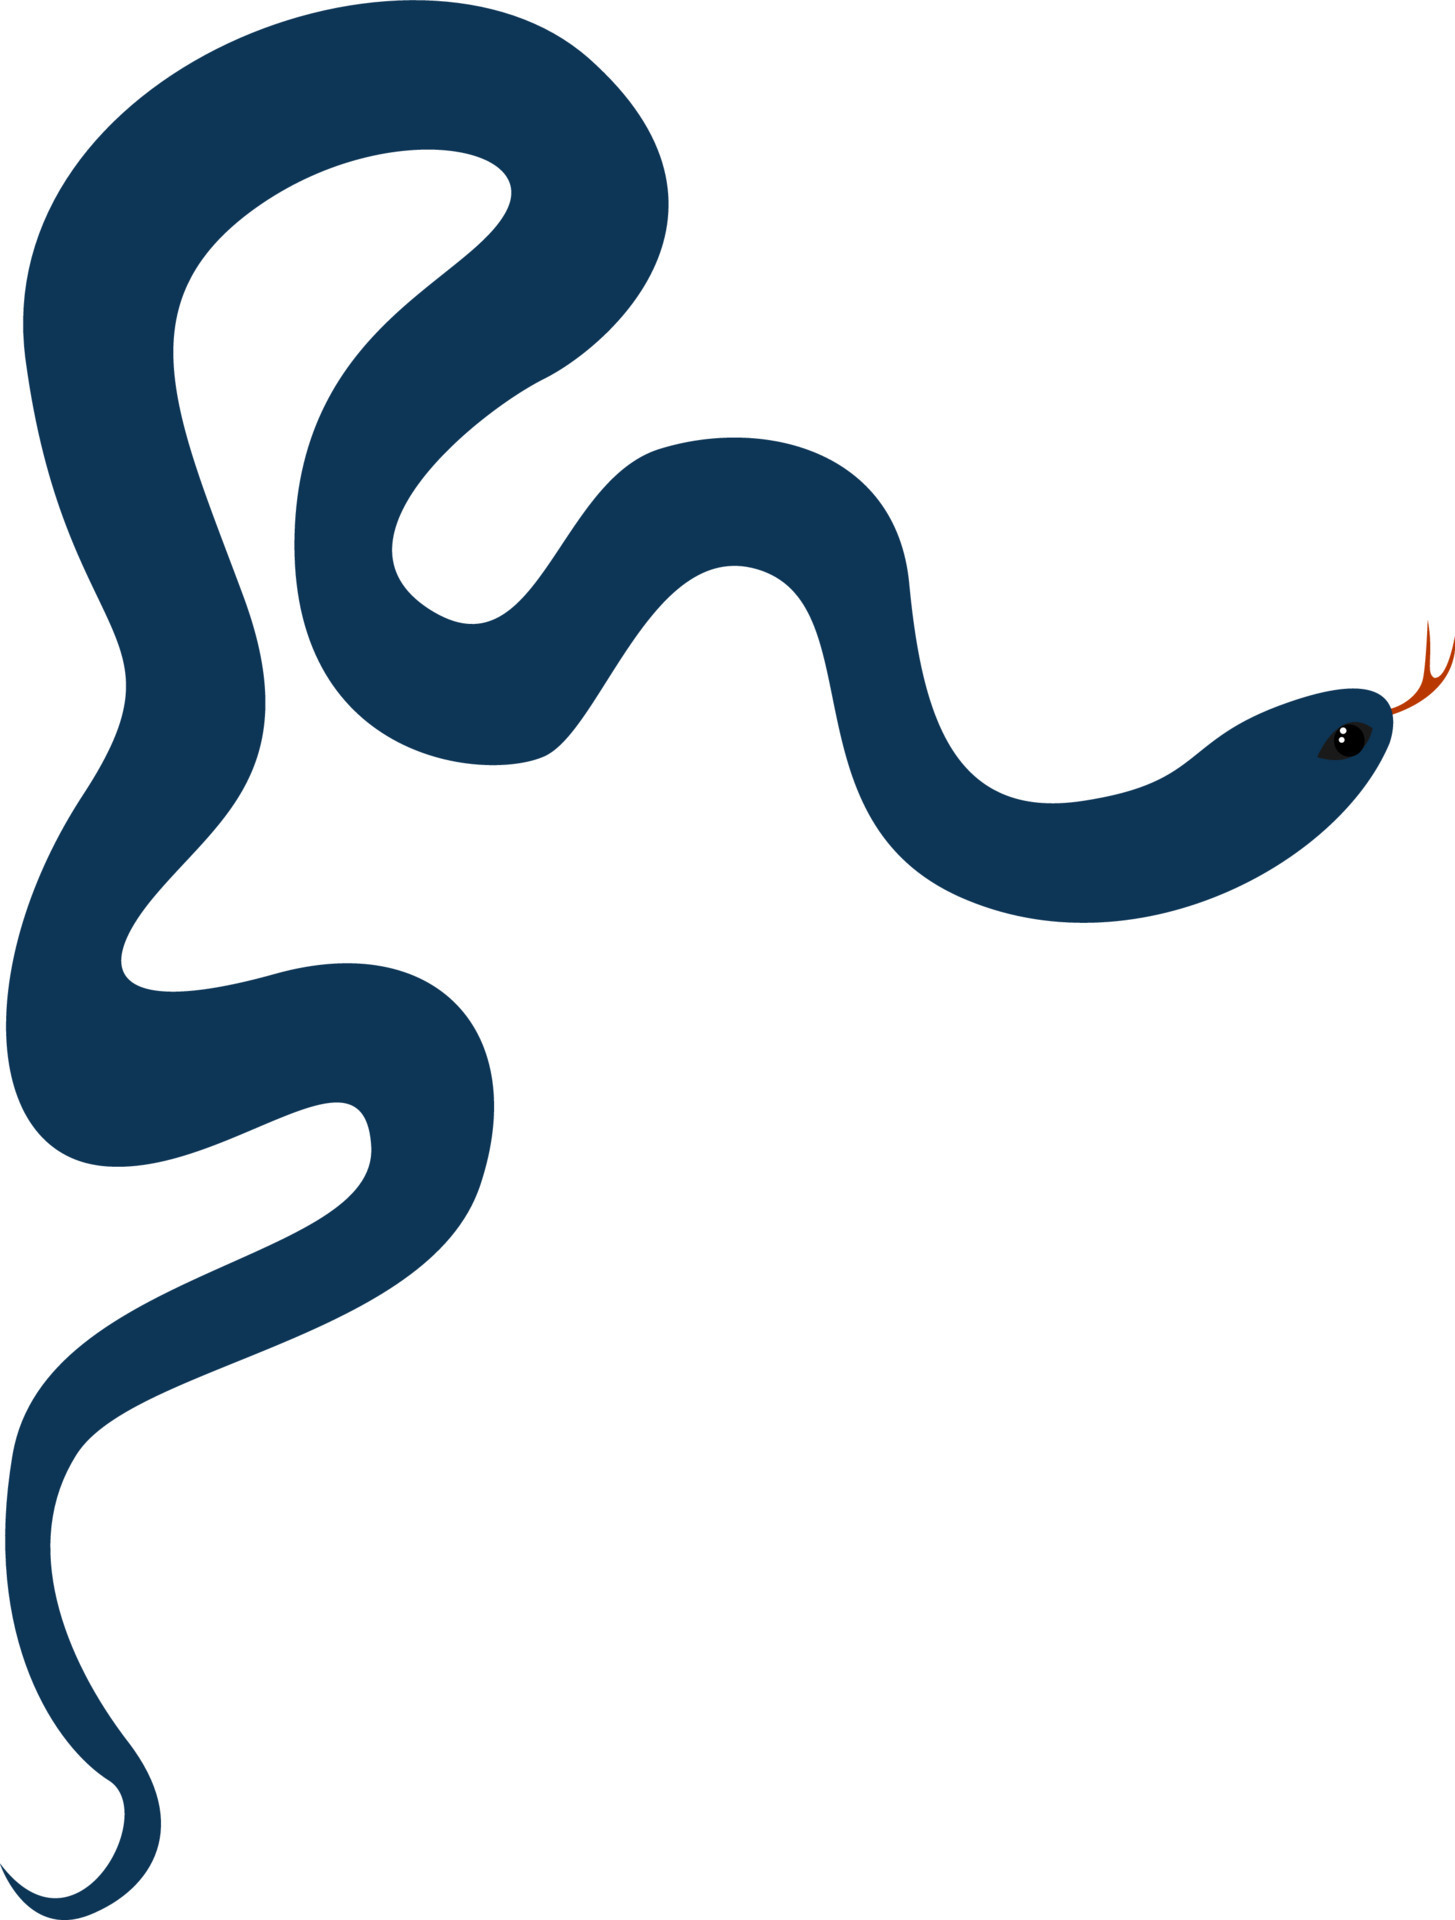 Conceito de cobra azul ilustração stock. Ilustração de creativo